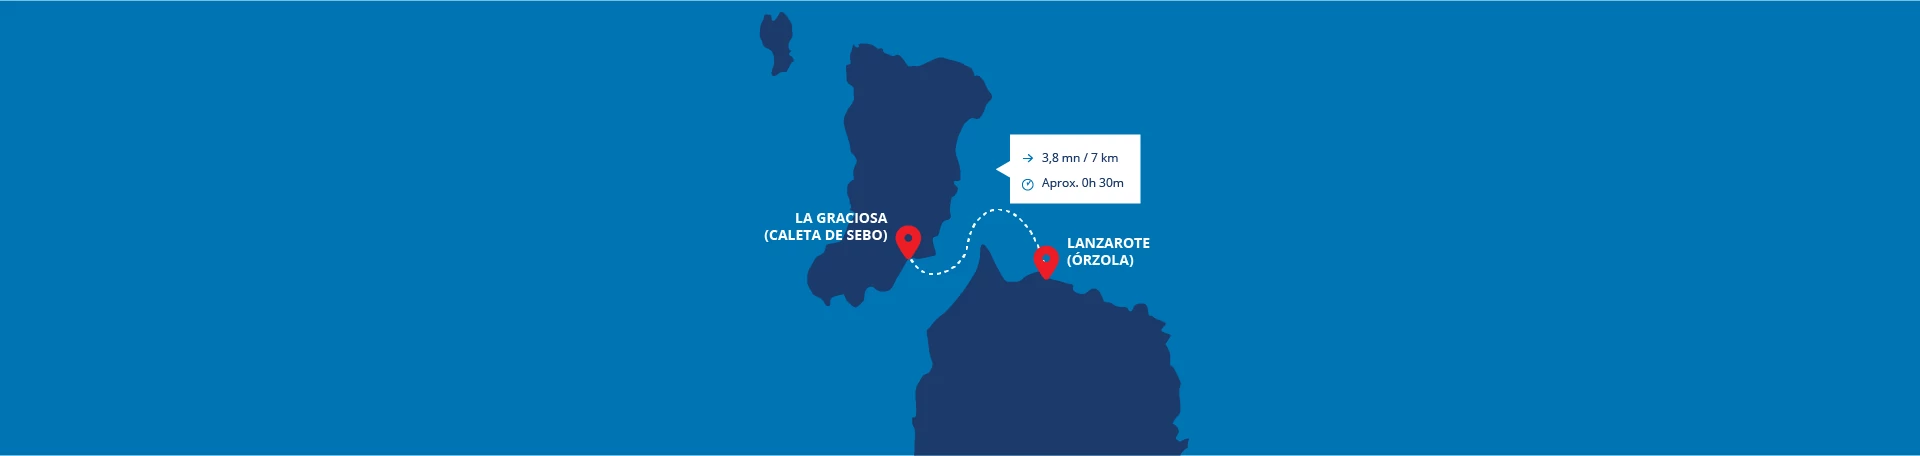 Mapa de trayecto de barco Lineas Romero entre lanzarote y La Graciosa